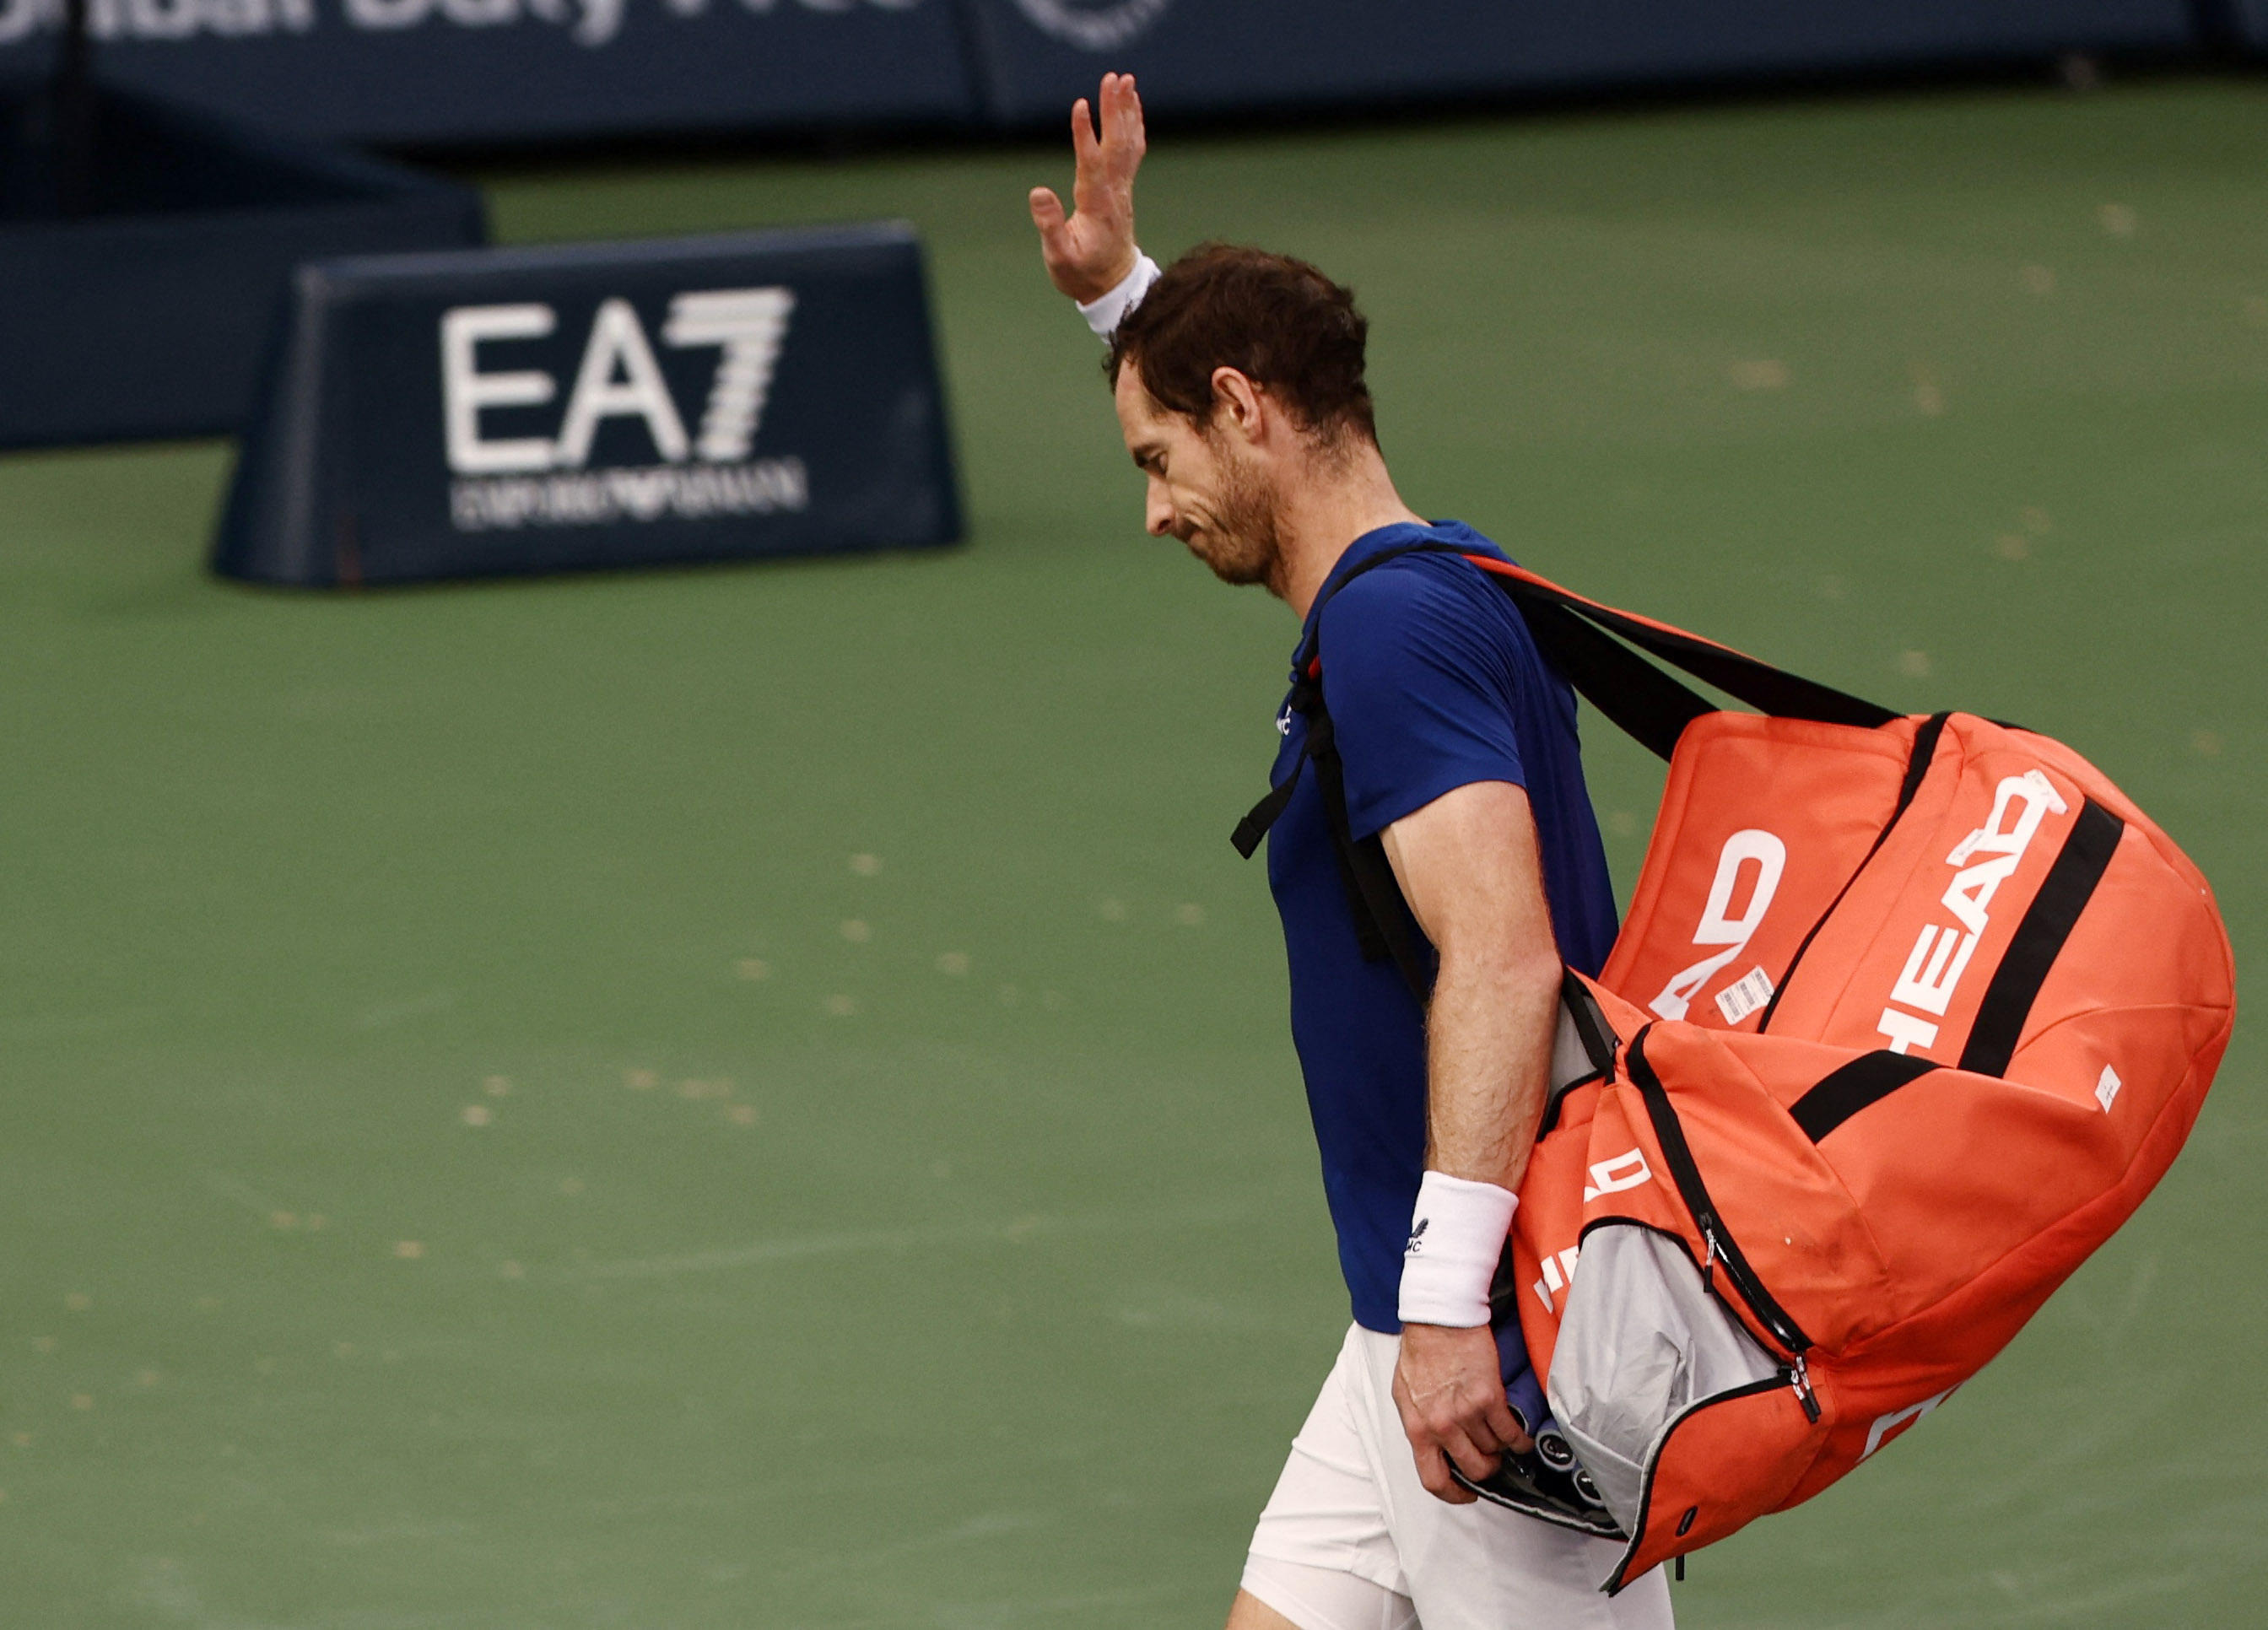 Les prochains tournois d'Andy Murray vont ressembler à une tournée d'adieux... REUTERS/Amr Alfiky